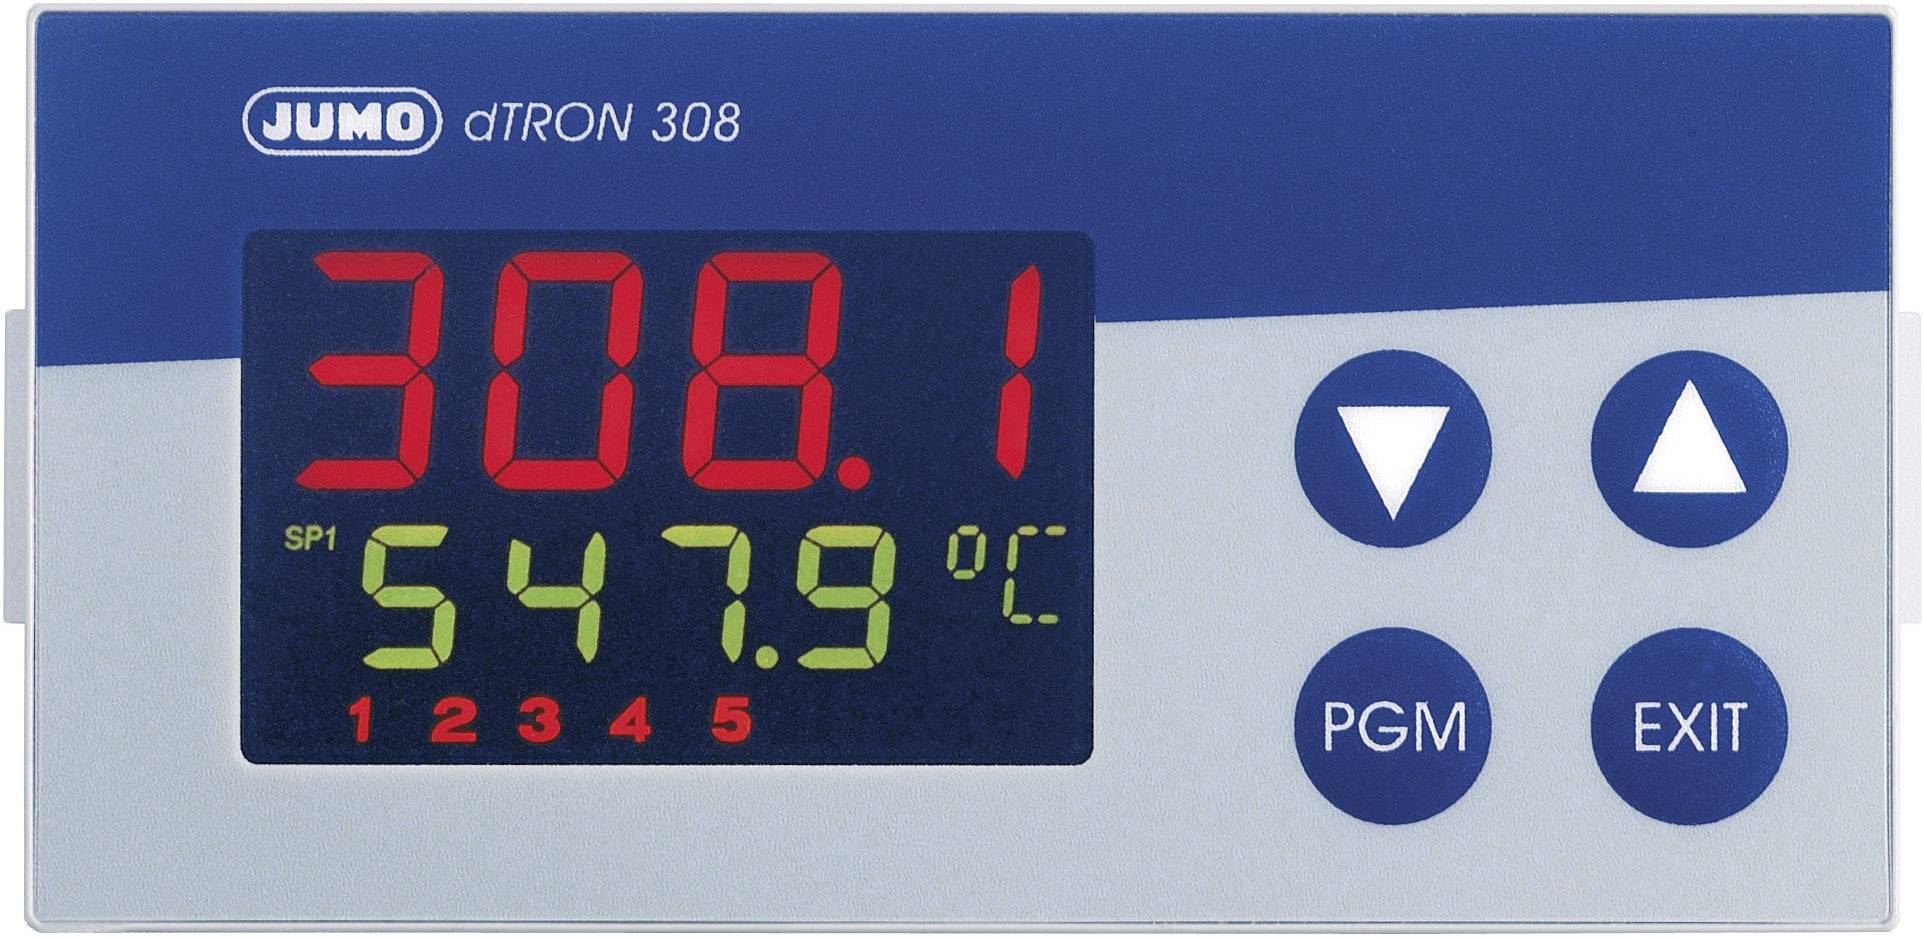 Jumo dTRON 308 micro-processeur régulateur type 703042 régulateur de température 